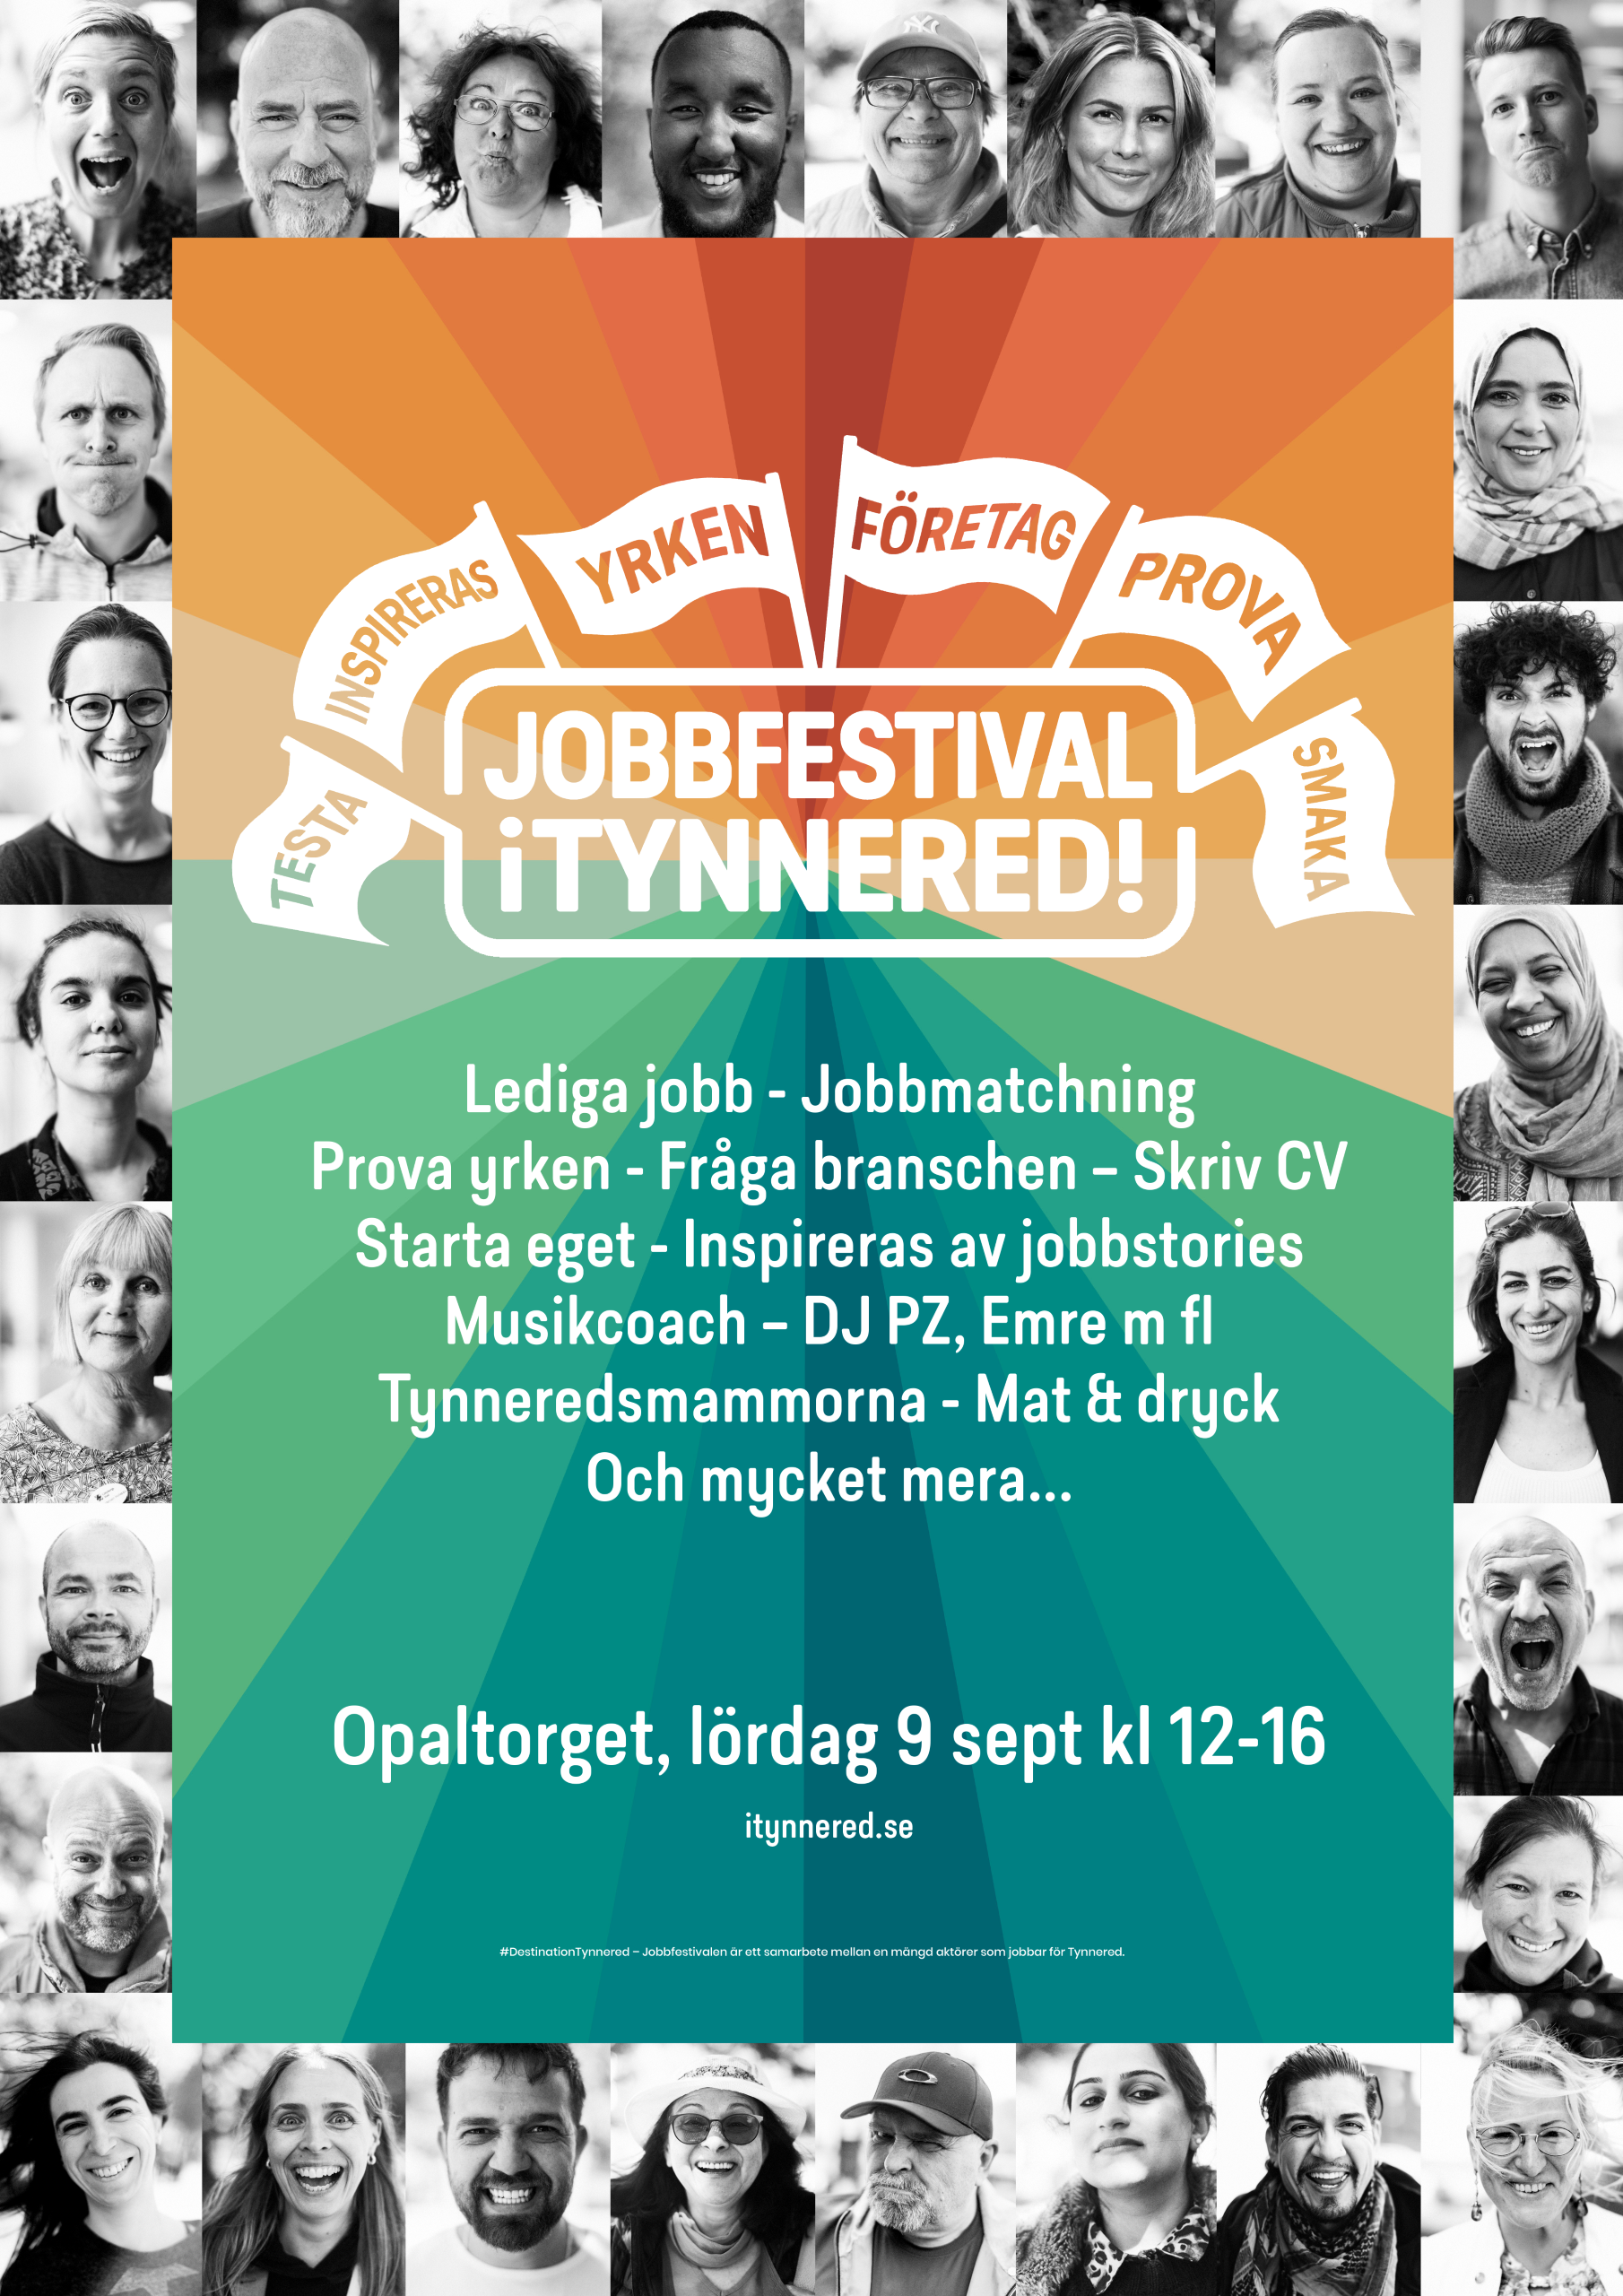 På lördag är det jobbfestival i Tynnered!